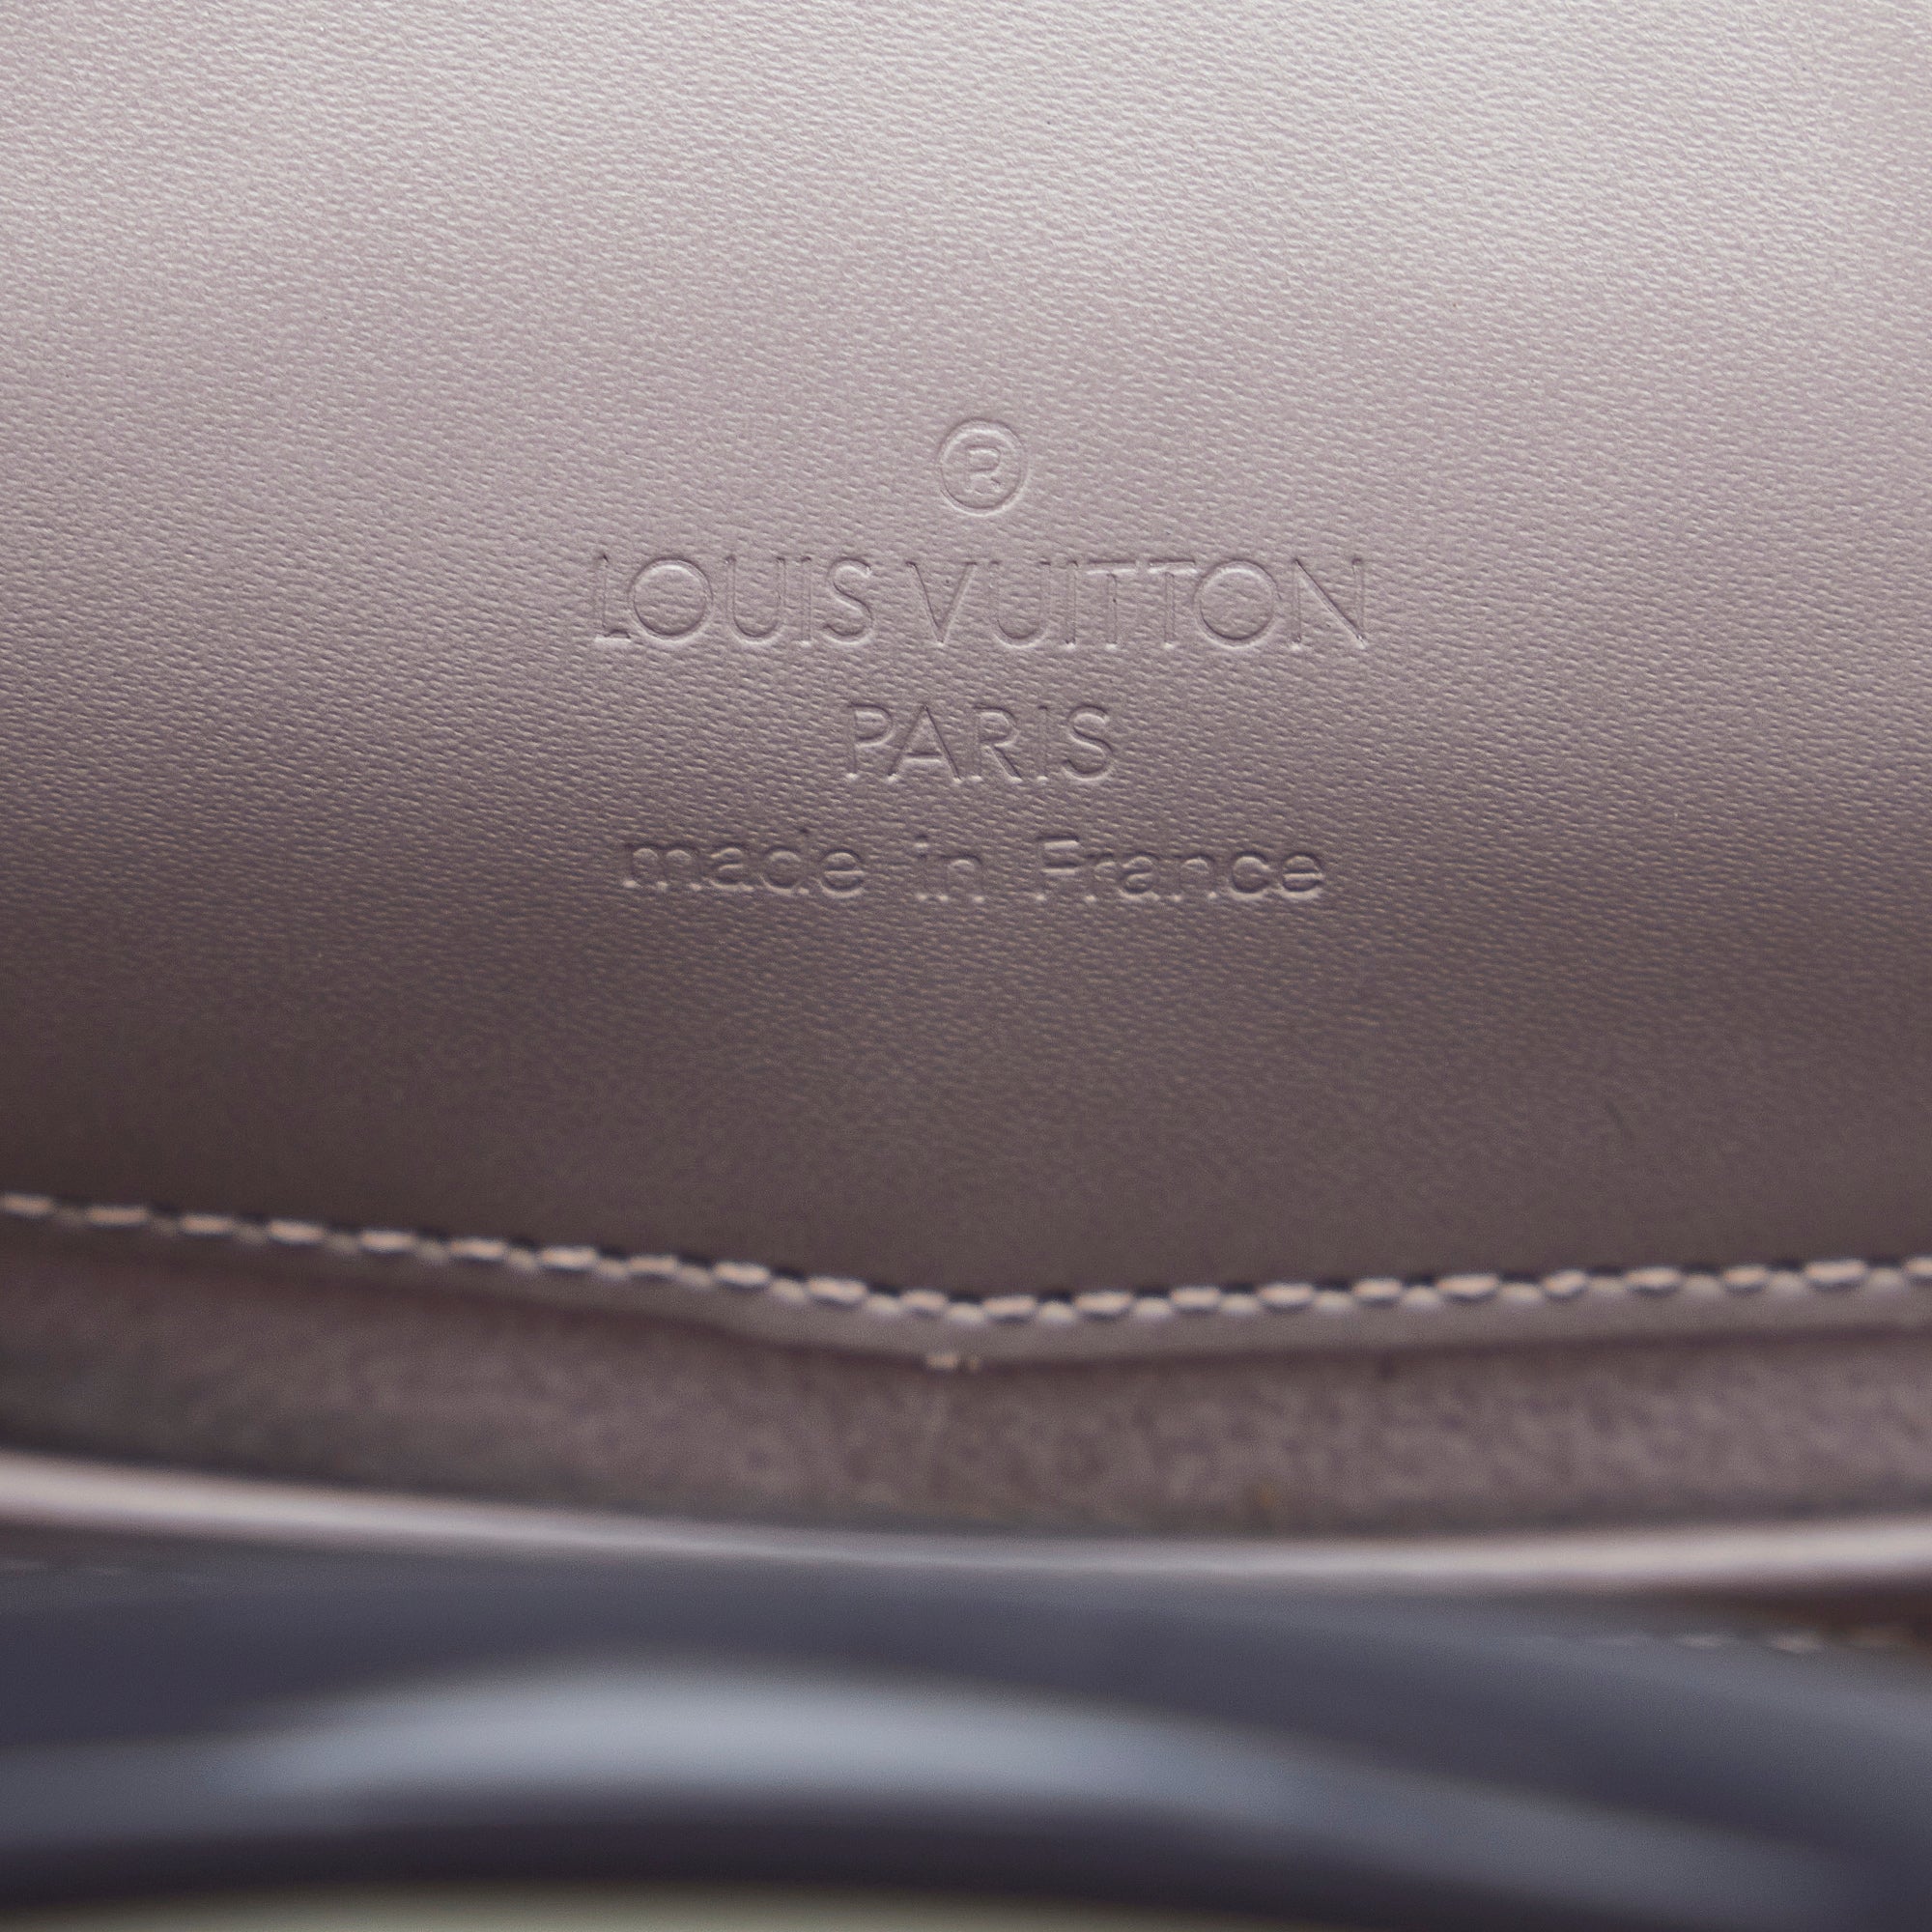 Buy Louis Vuitton Reverie Handbag Epi Leather Purple 87201